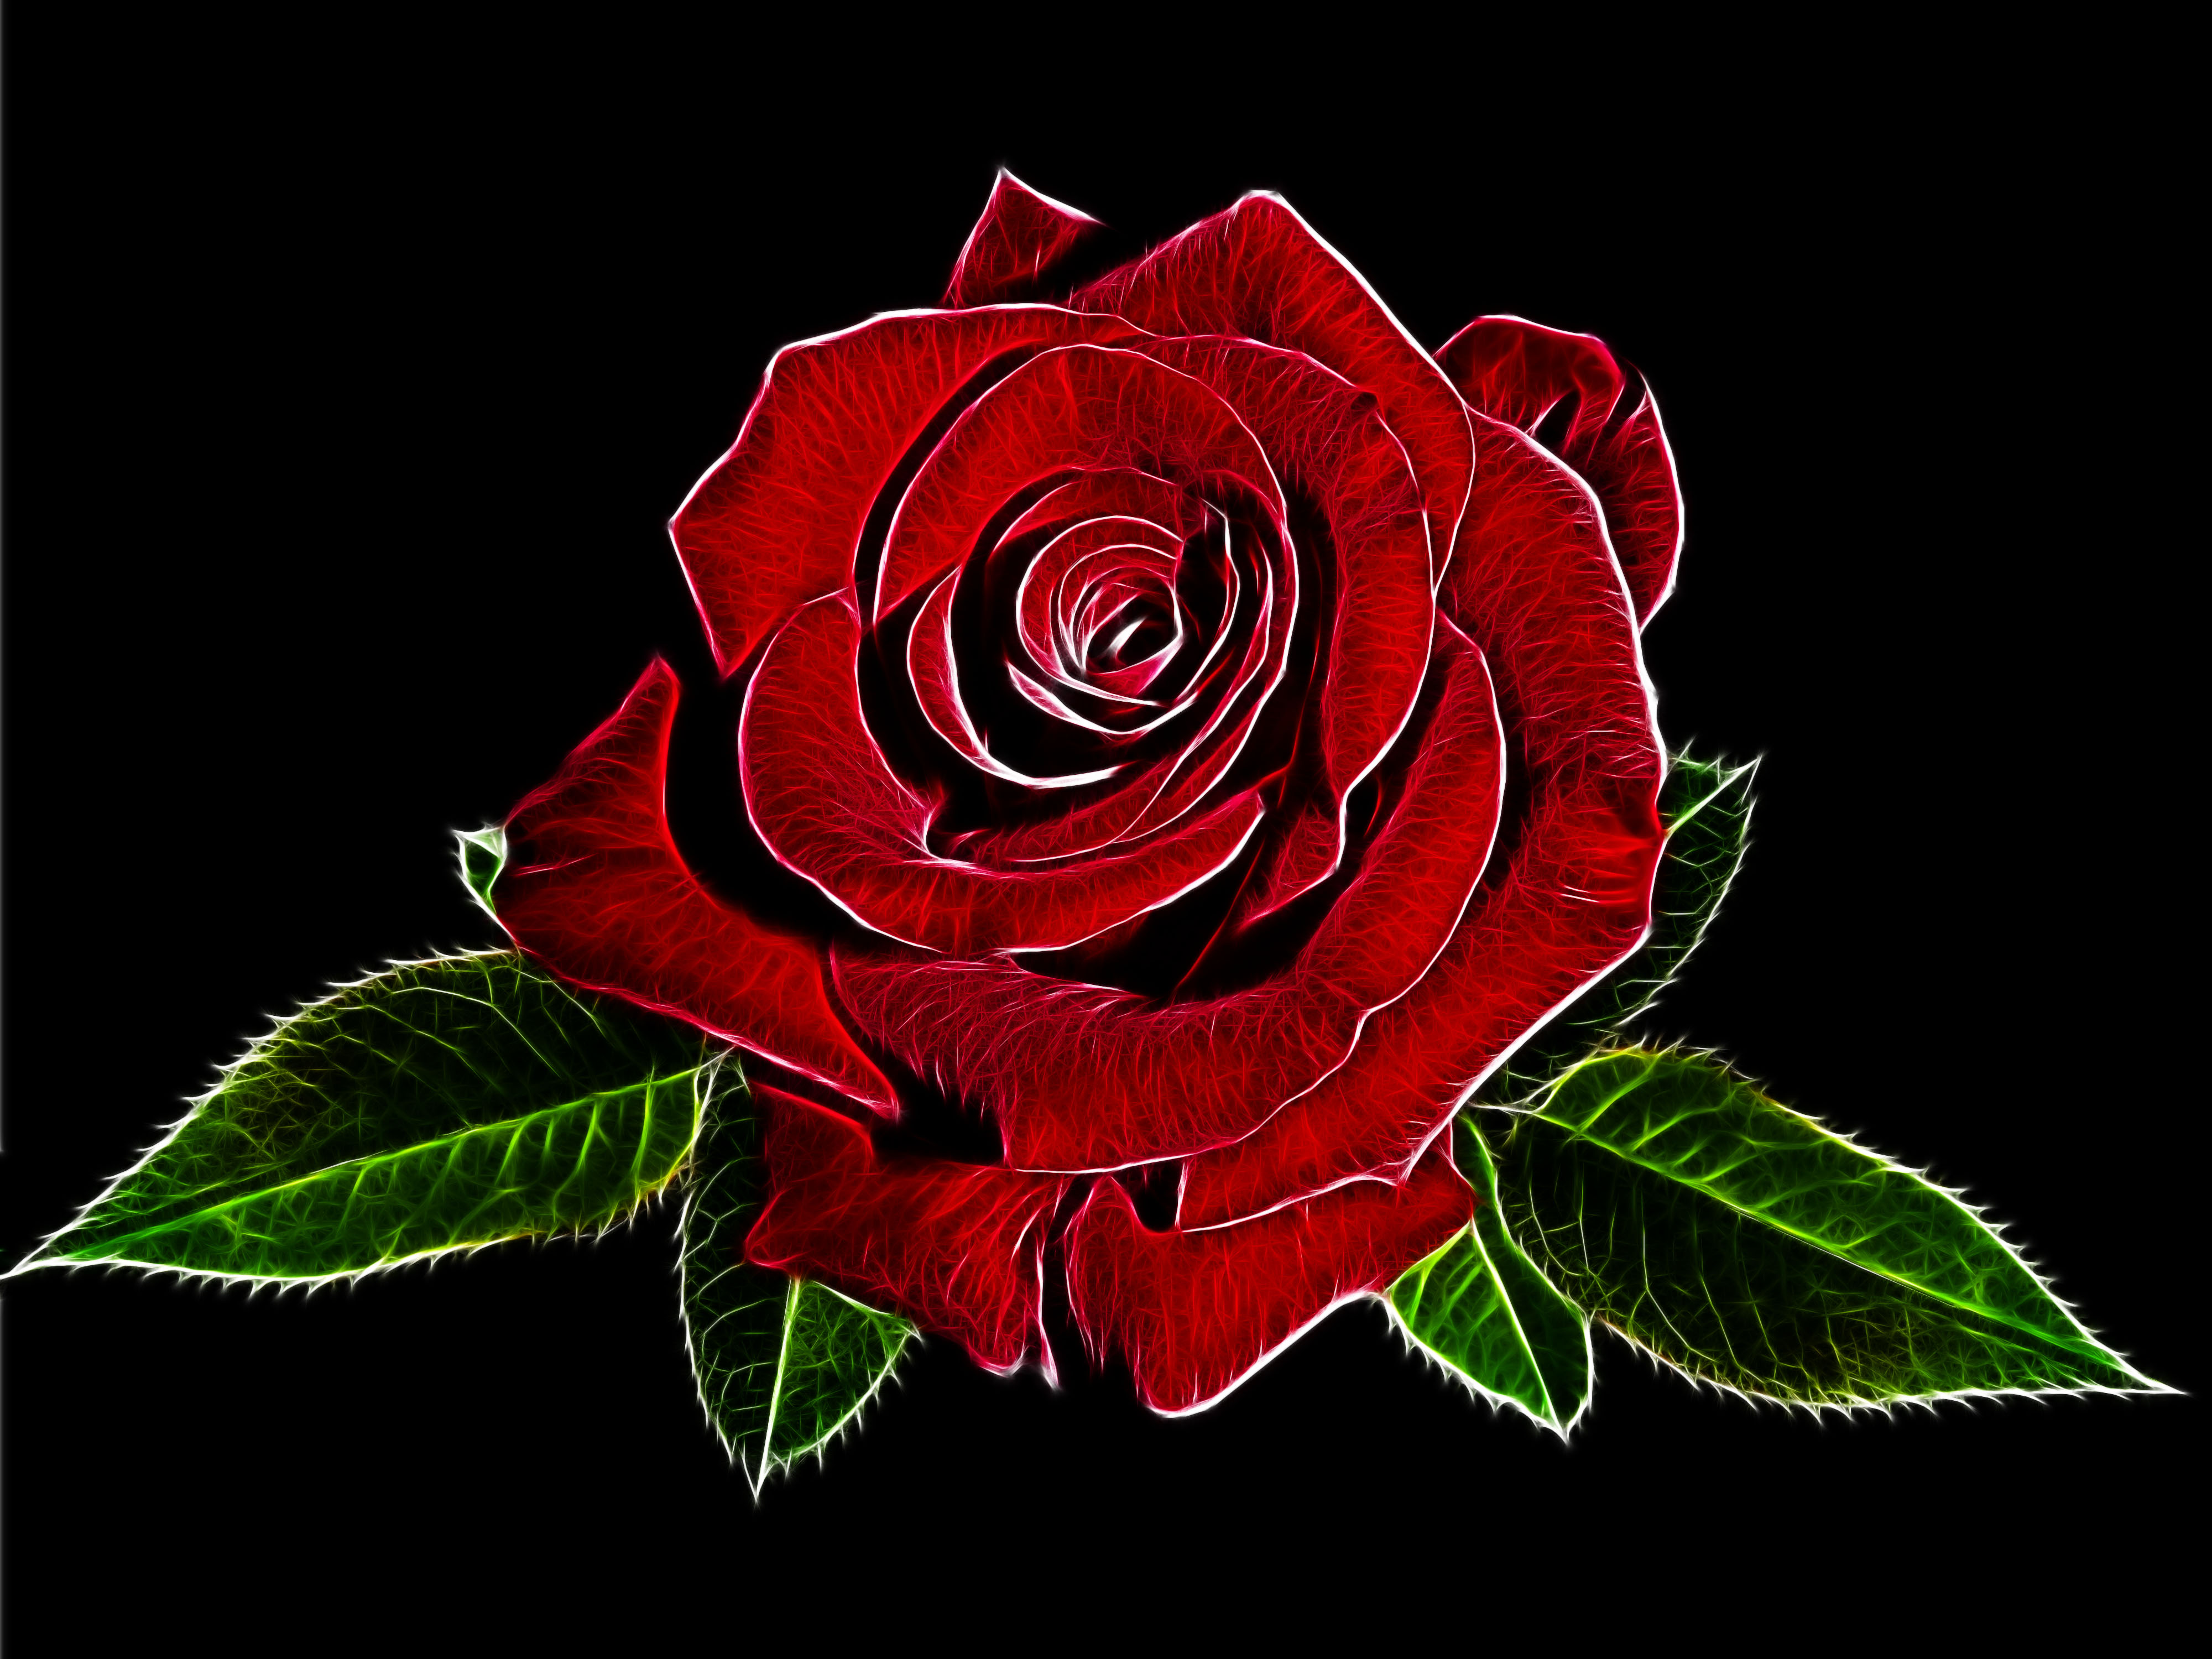 Rose red by Susanlu4esm